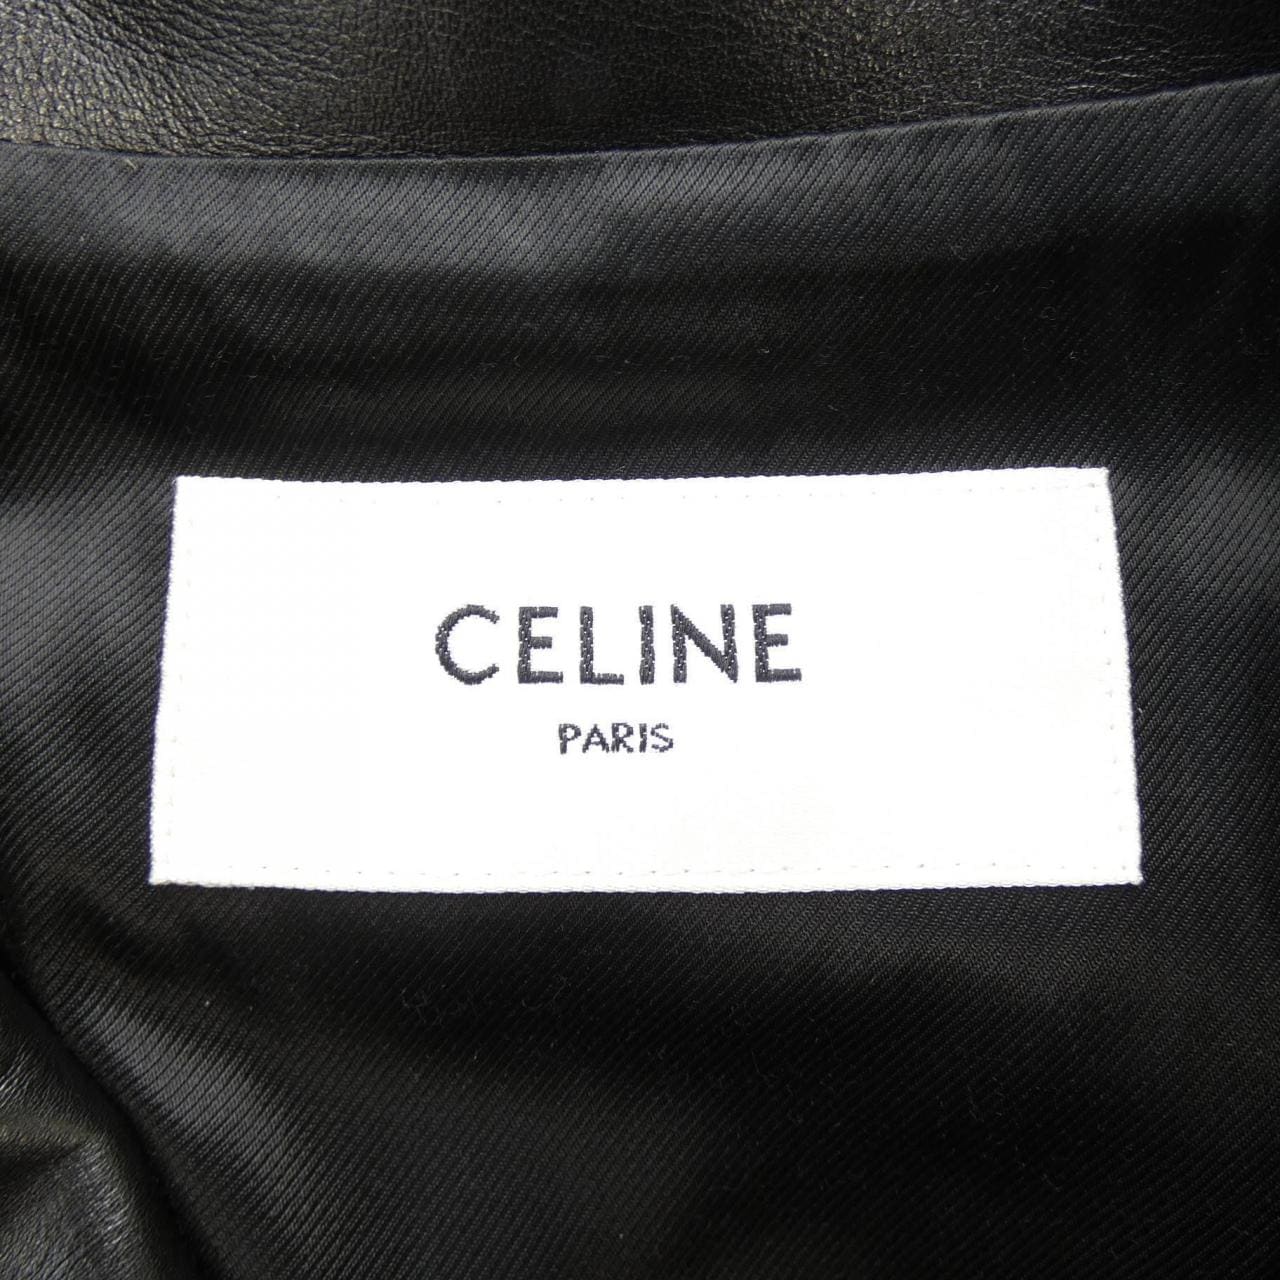 CELINE Celine riders jacket